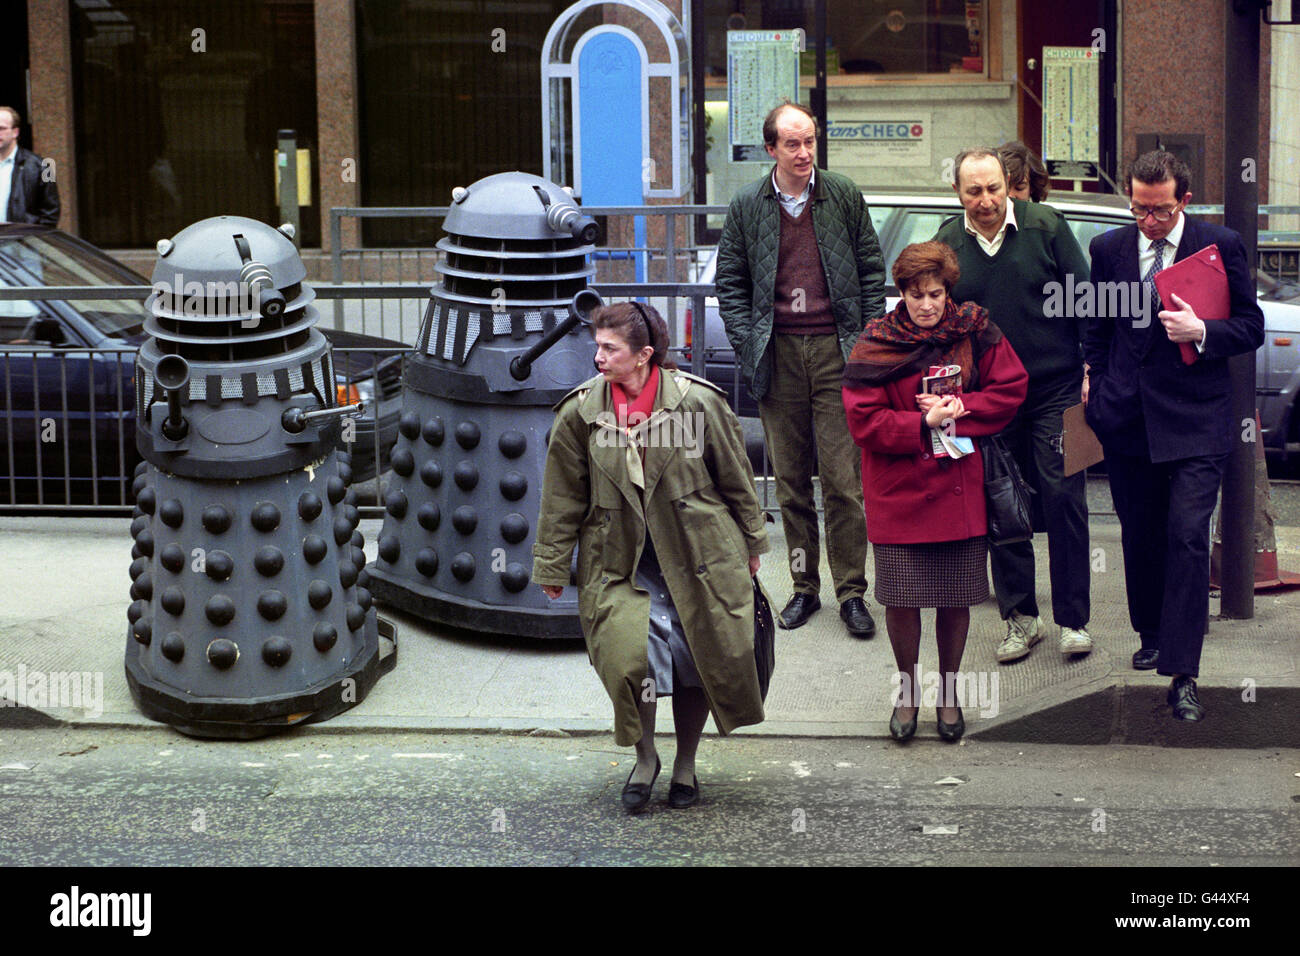 Deux Daleks du Dr Who célébrité, attendez le bon moment pour traverser Montpellier Street, Knightsbridge, Londres, sur leur chemin à Bonhams salle de vente aux enchères, où ils seront en vente avec d'autres souvenirs du Dr Who. Banque D'Images